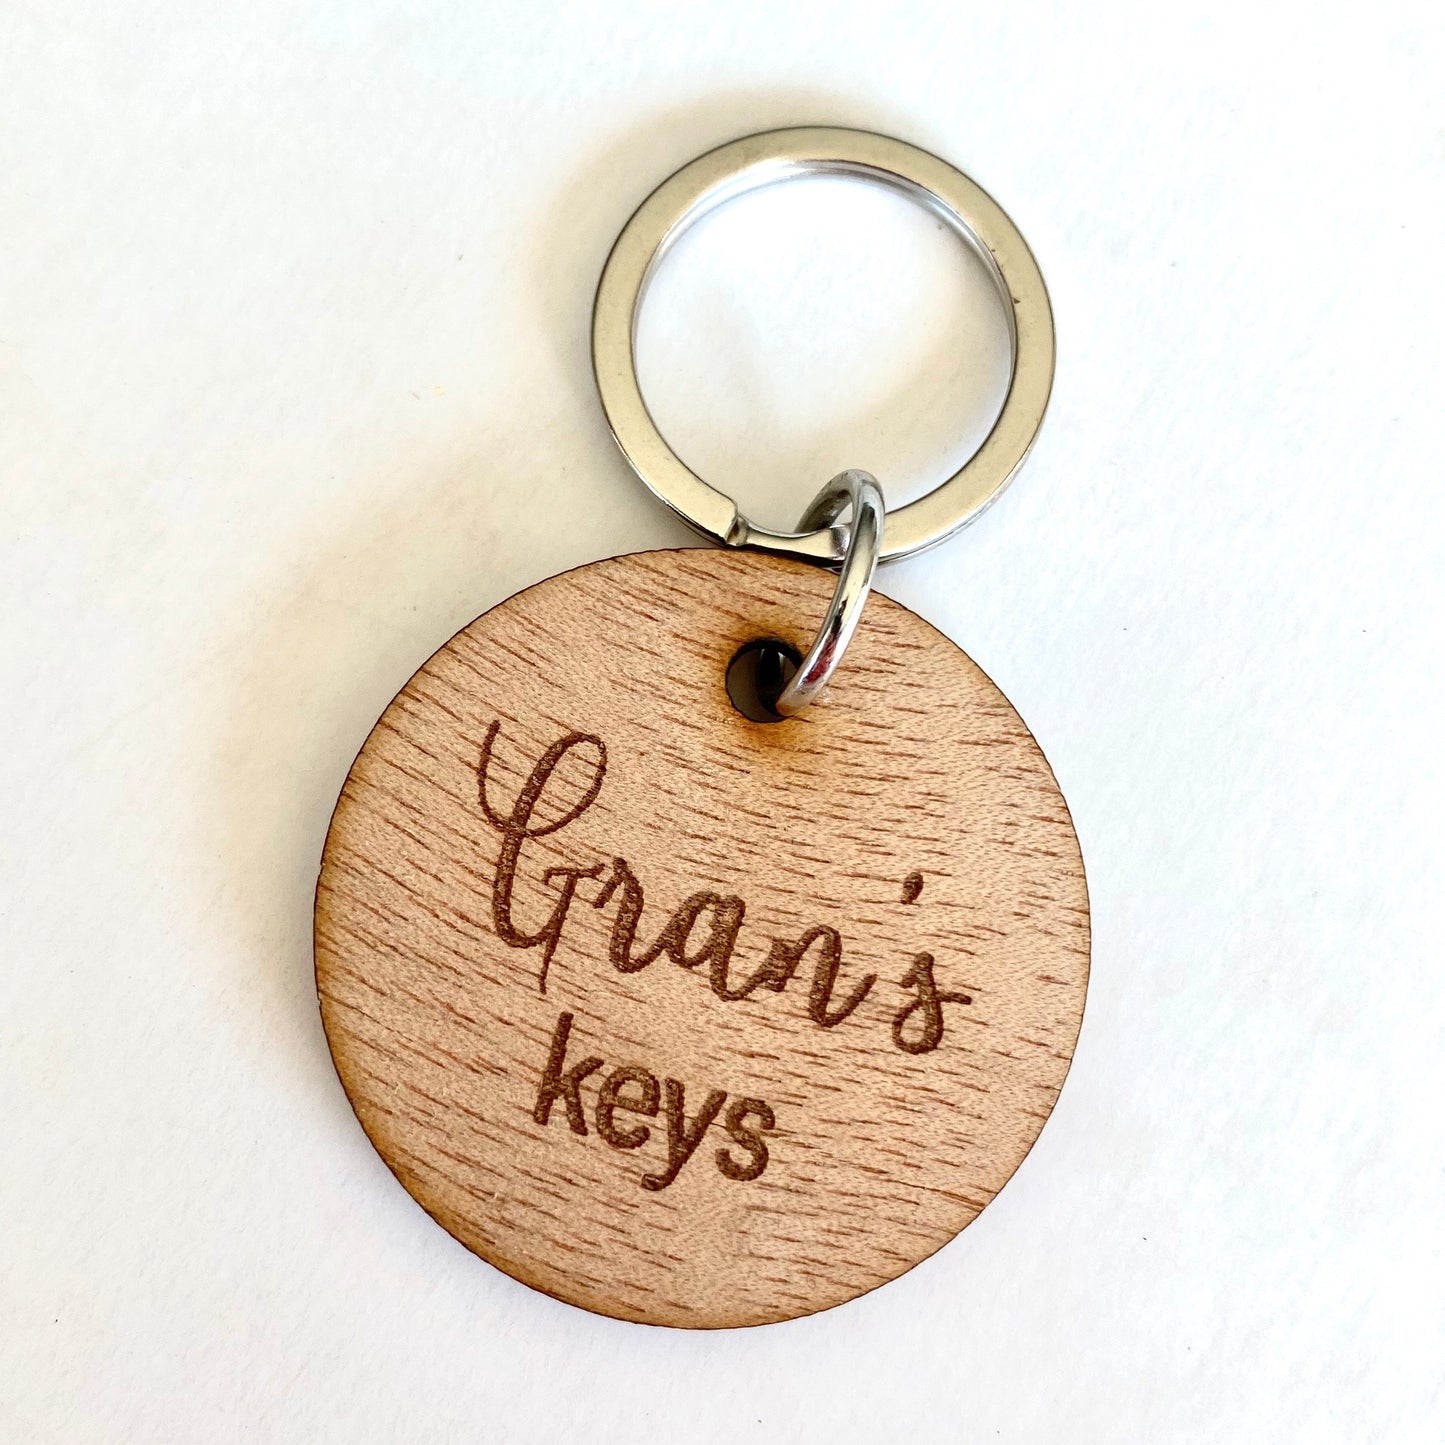 Gran's Keys - Younique Collective